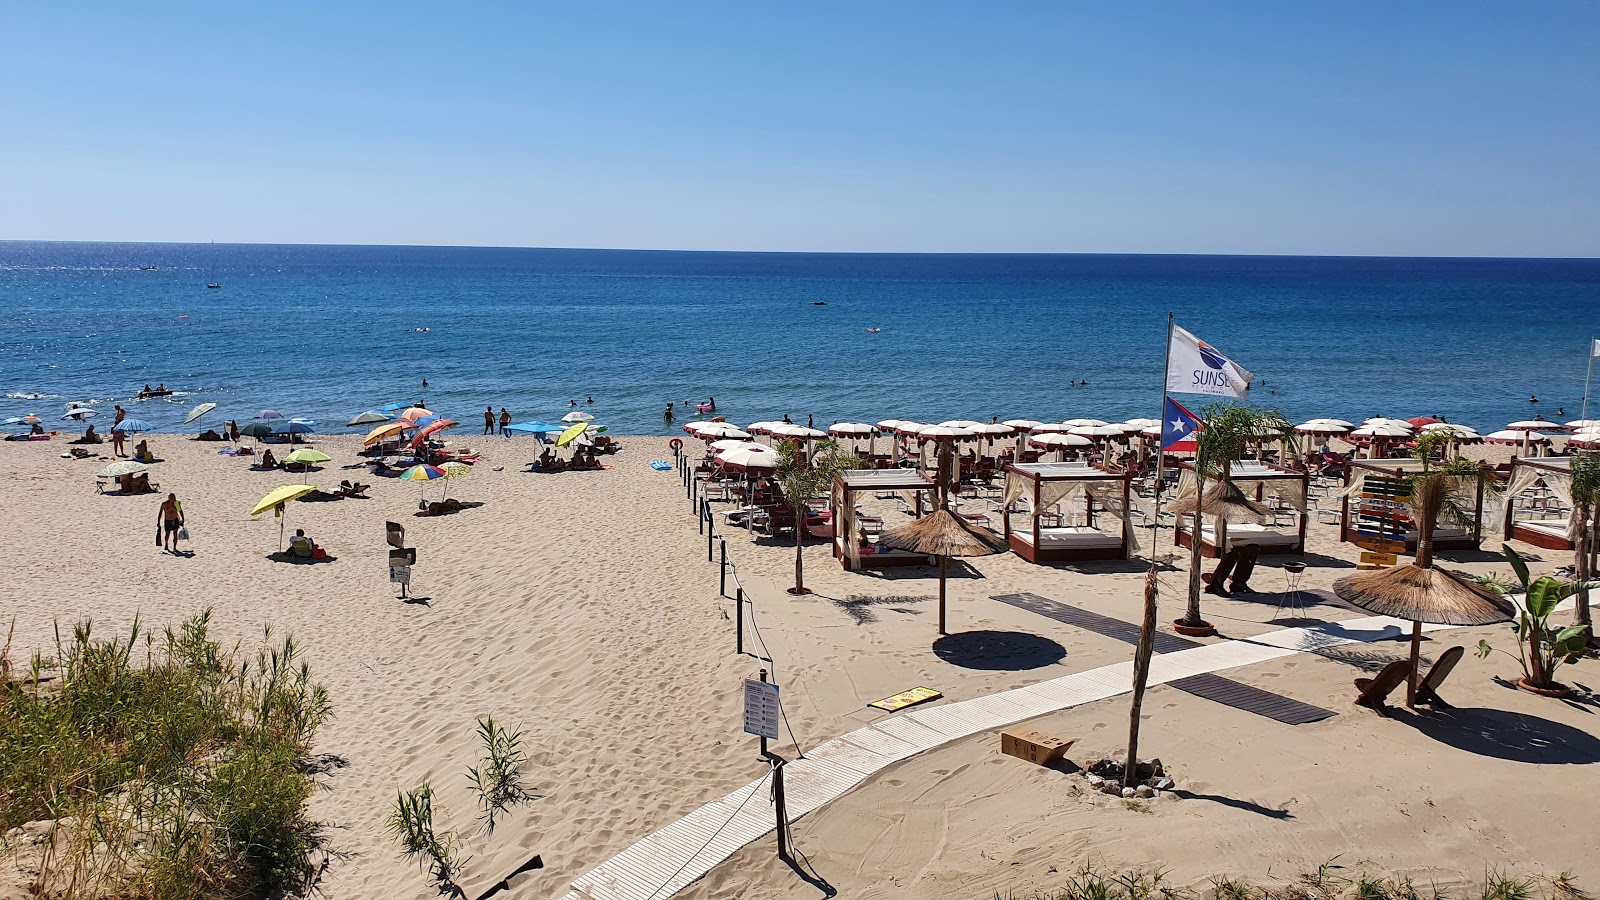 Spiaggia Le Saline II'in fotoğrafı parlak kum yüzey ile